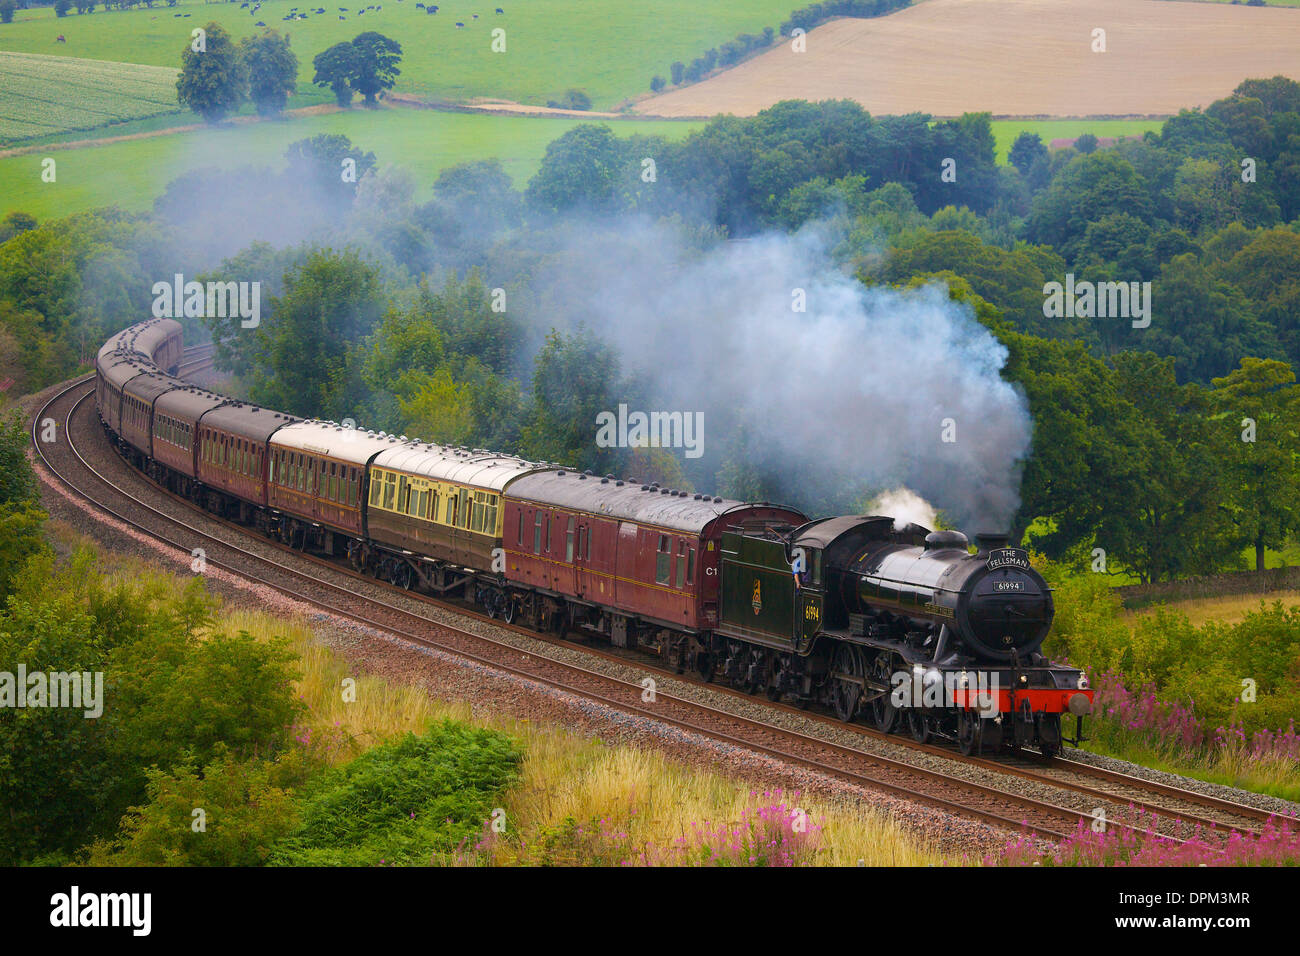 LNER Classe K4 2-6-0 'Le Grand Marquis' près de train à vapeur de bois Baron faible, régler à la ferme Armathwaite Ligne Carlisle, Eden Valley Banque D'Images